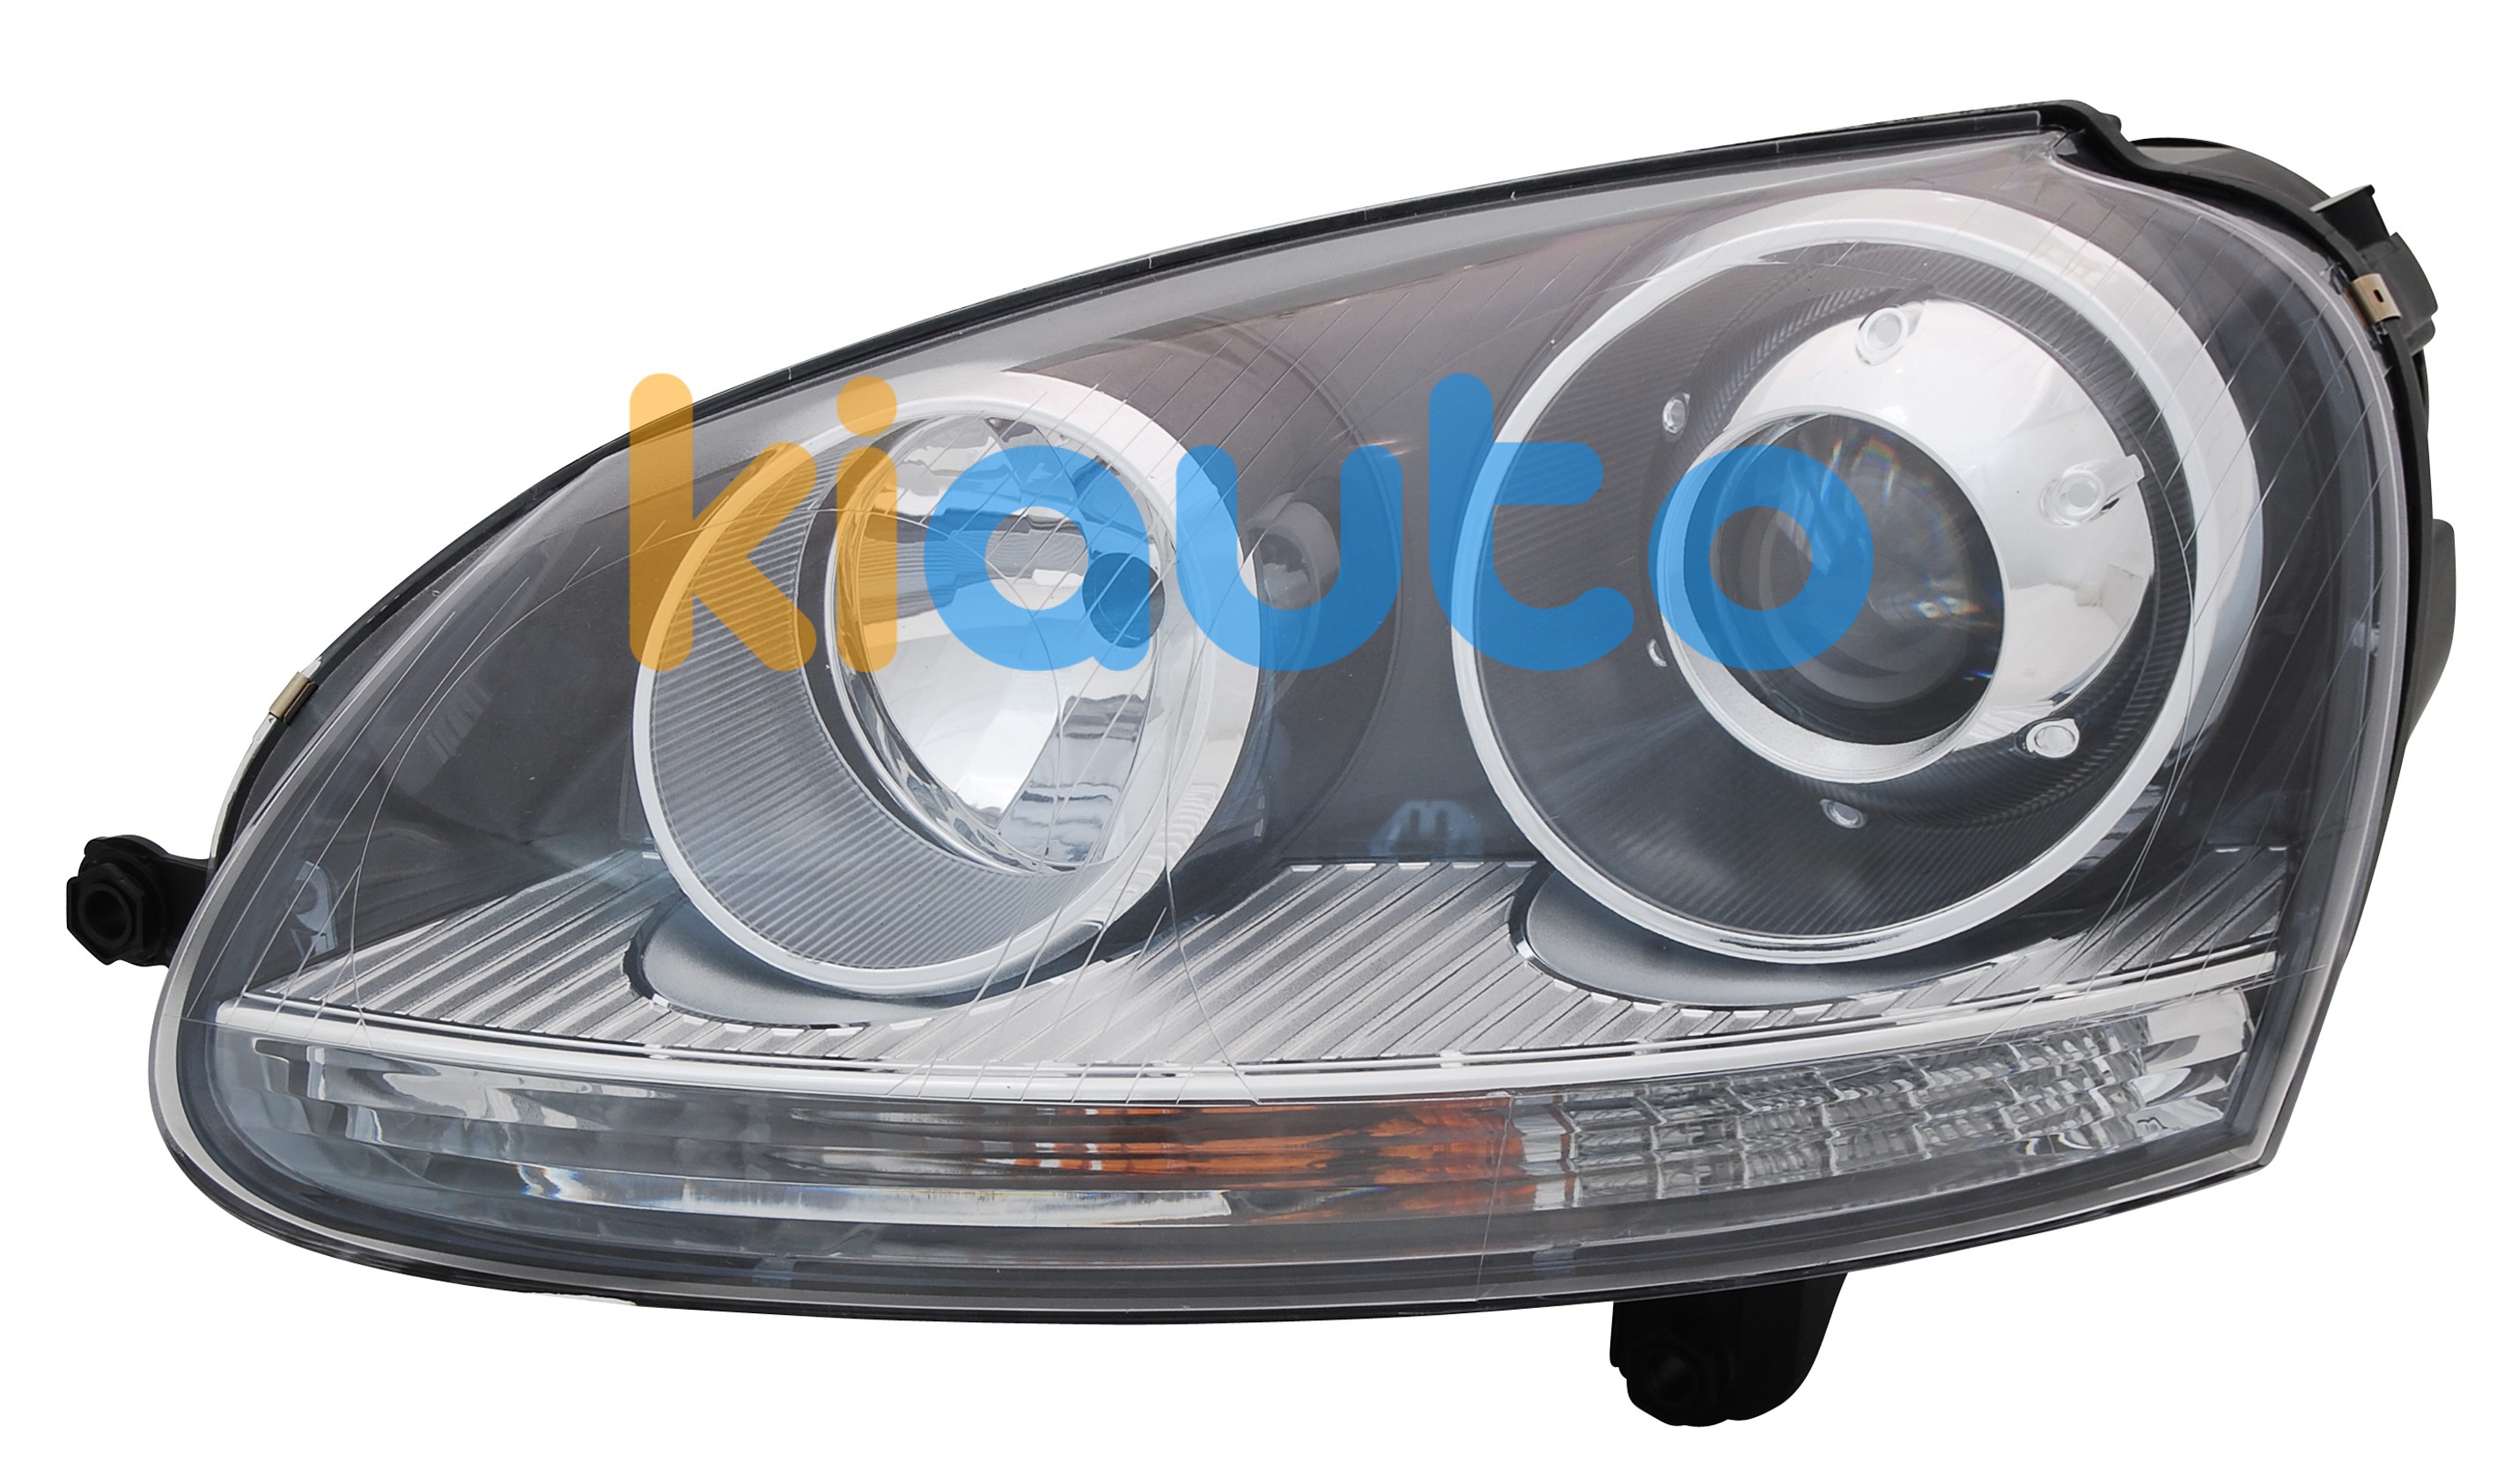 Phare avant pour Golf 5 LED et Xenon  prix chez AUTODOC de qualité  d'origine